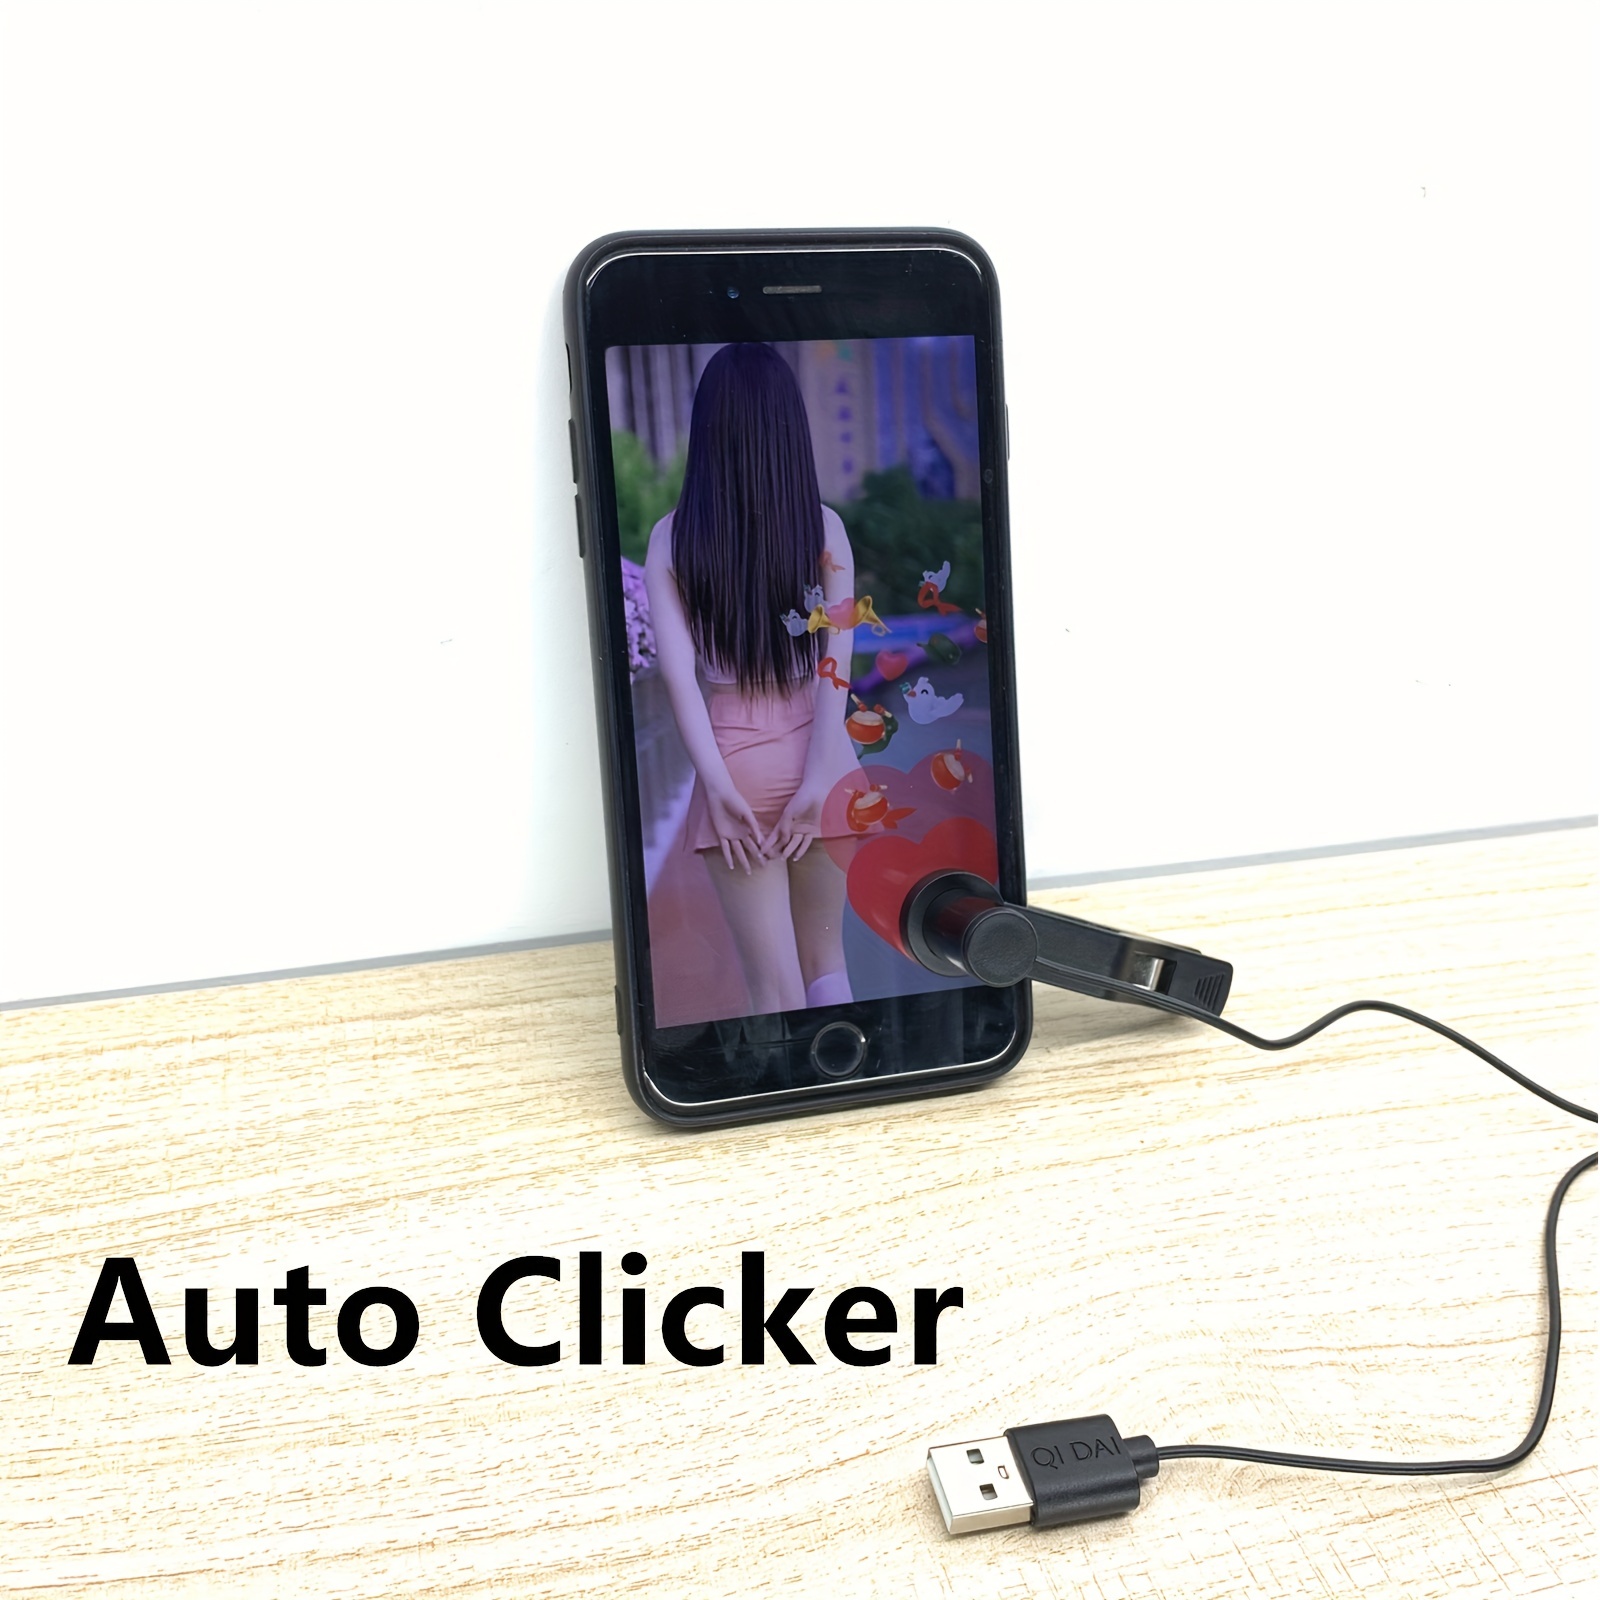  Auto Clicker, Auto Screen Clicker, Clip-on Clicker